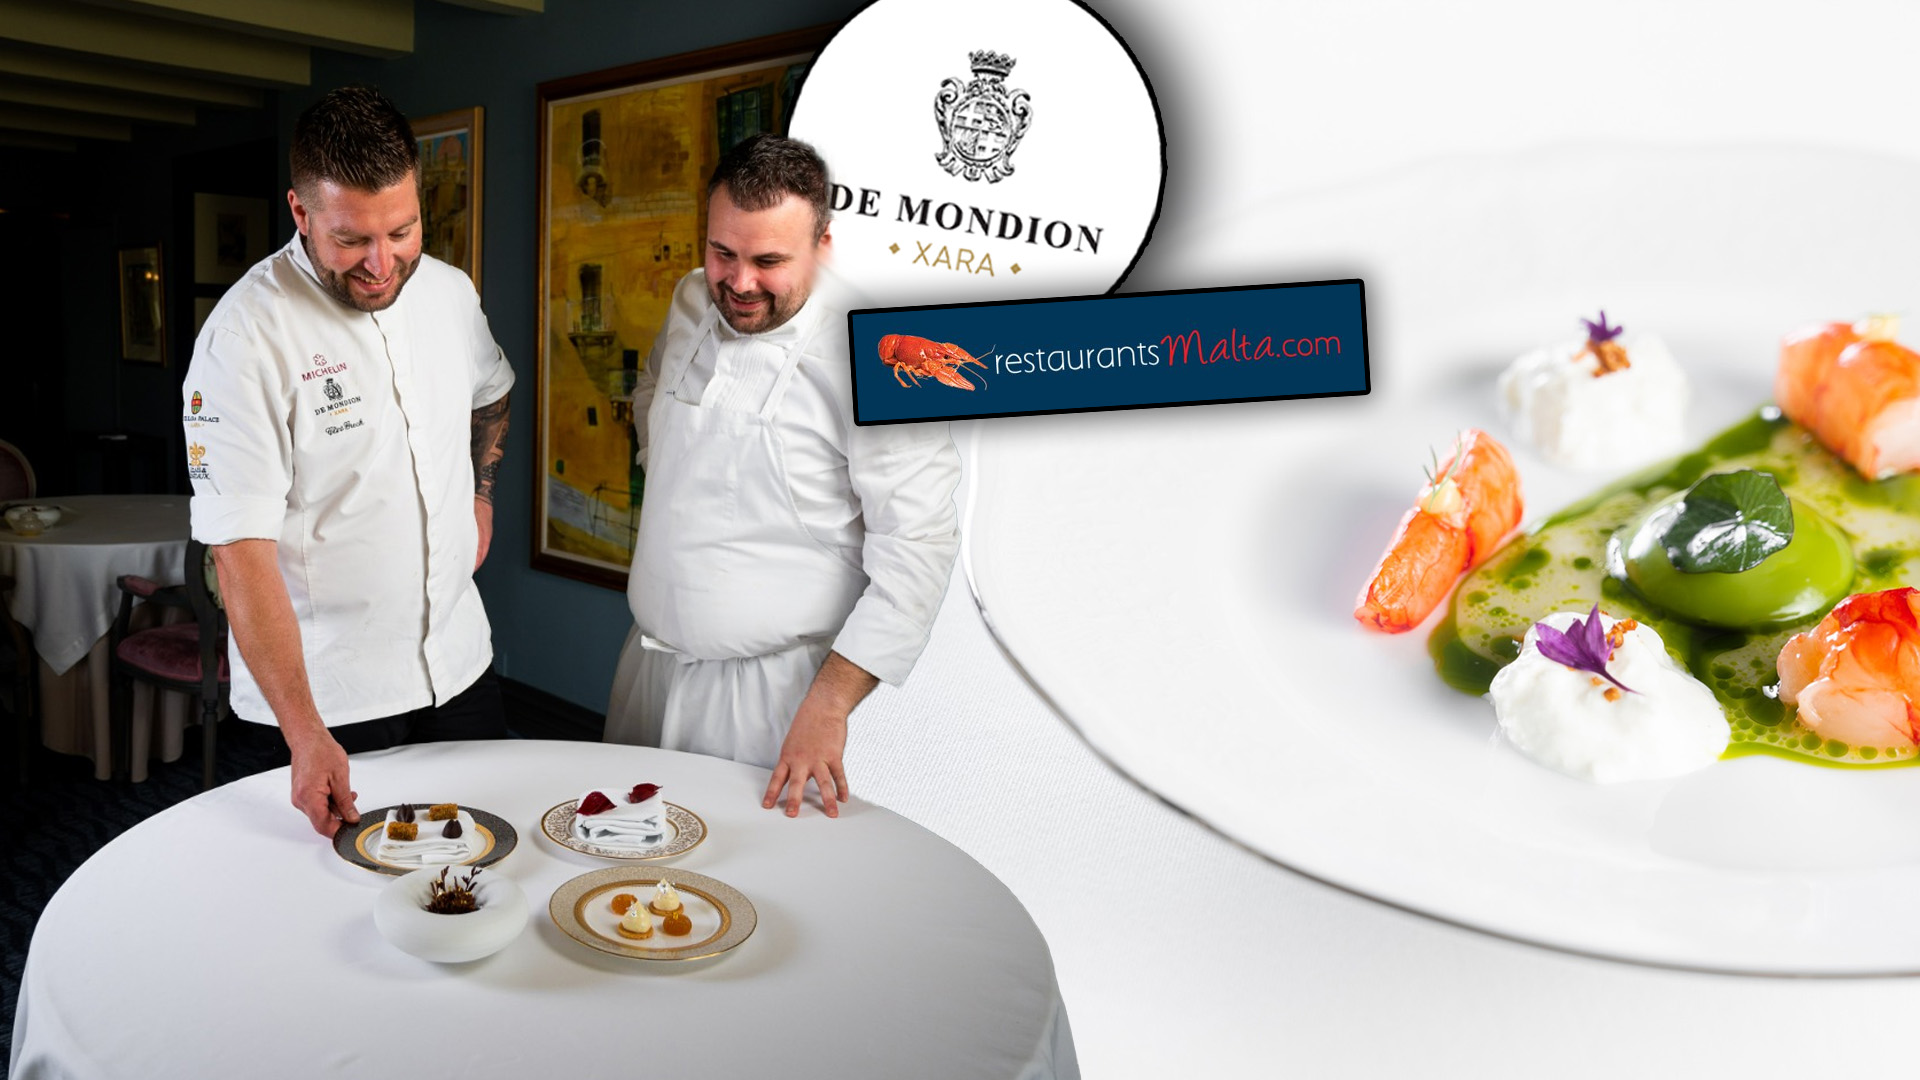 De Mondion Wins Best Restaurant In Malta